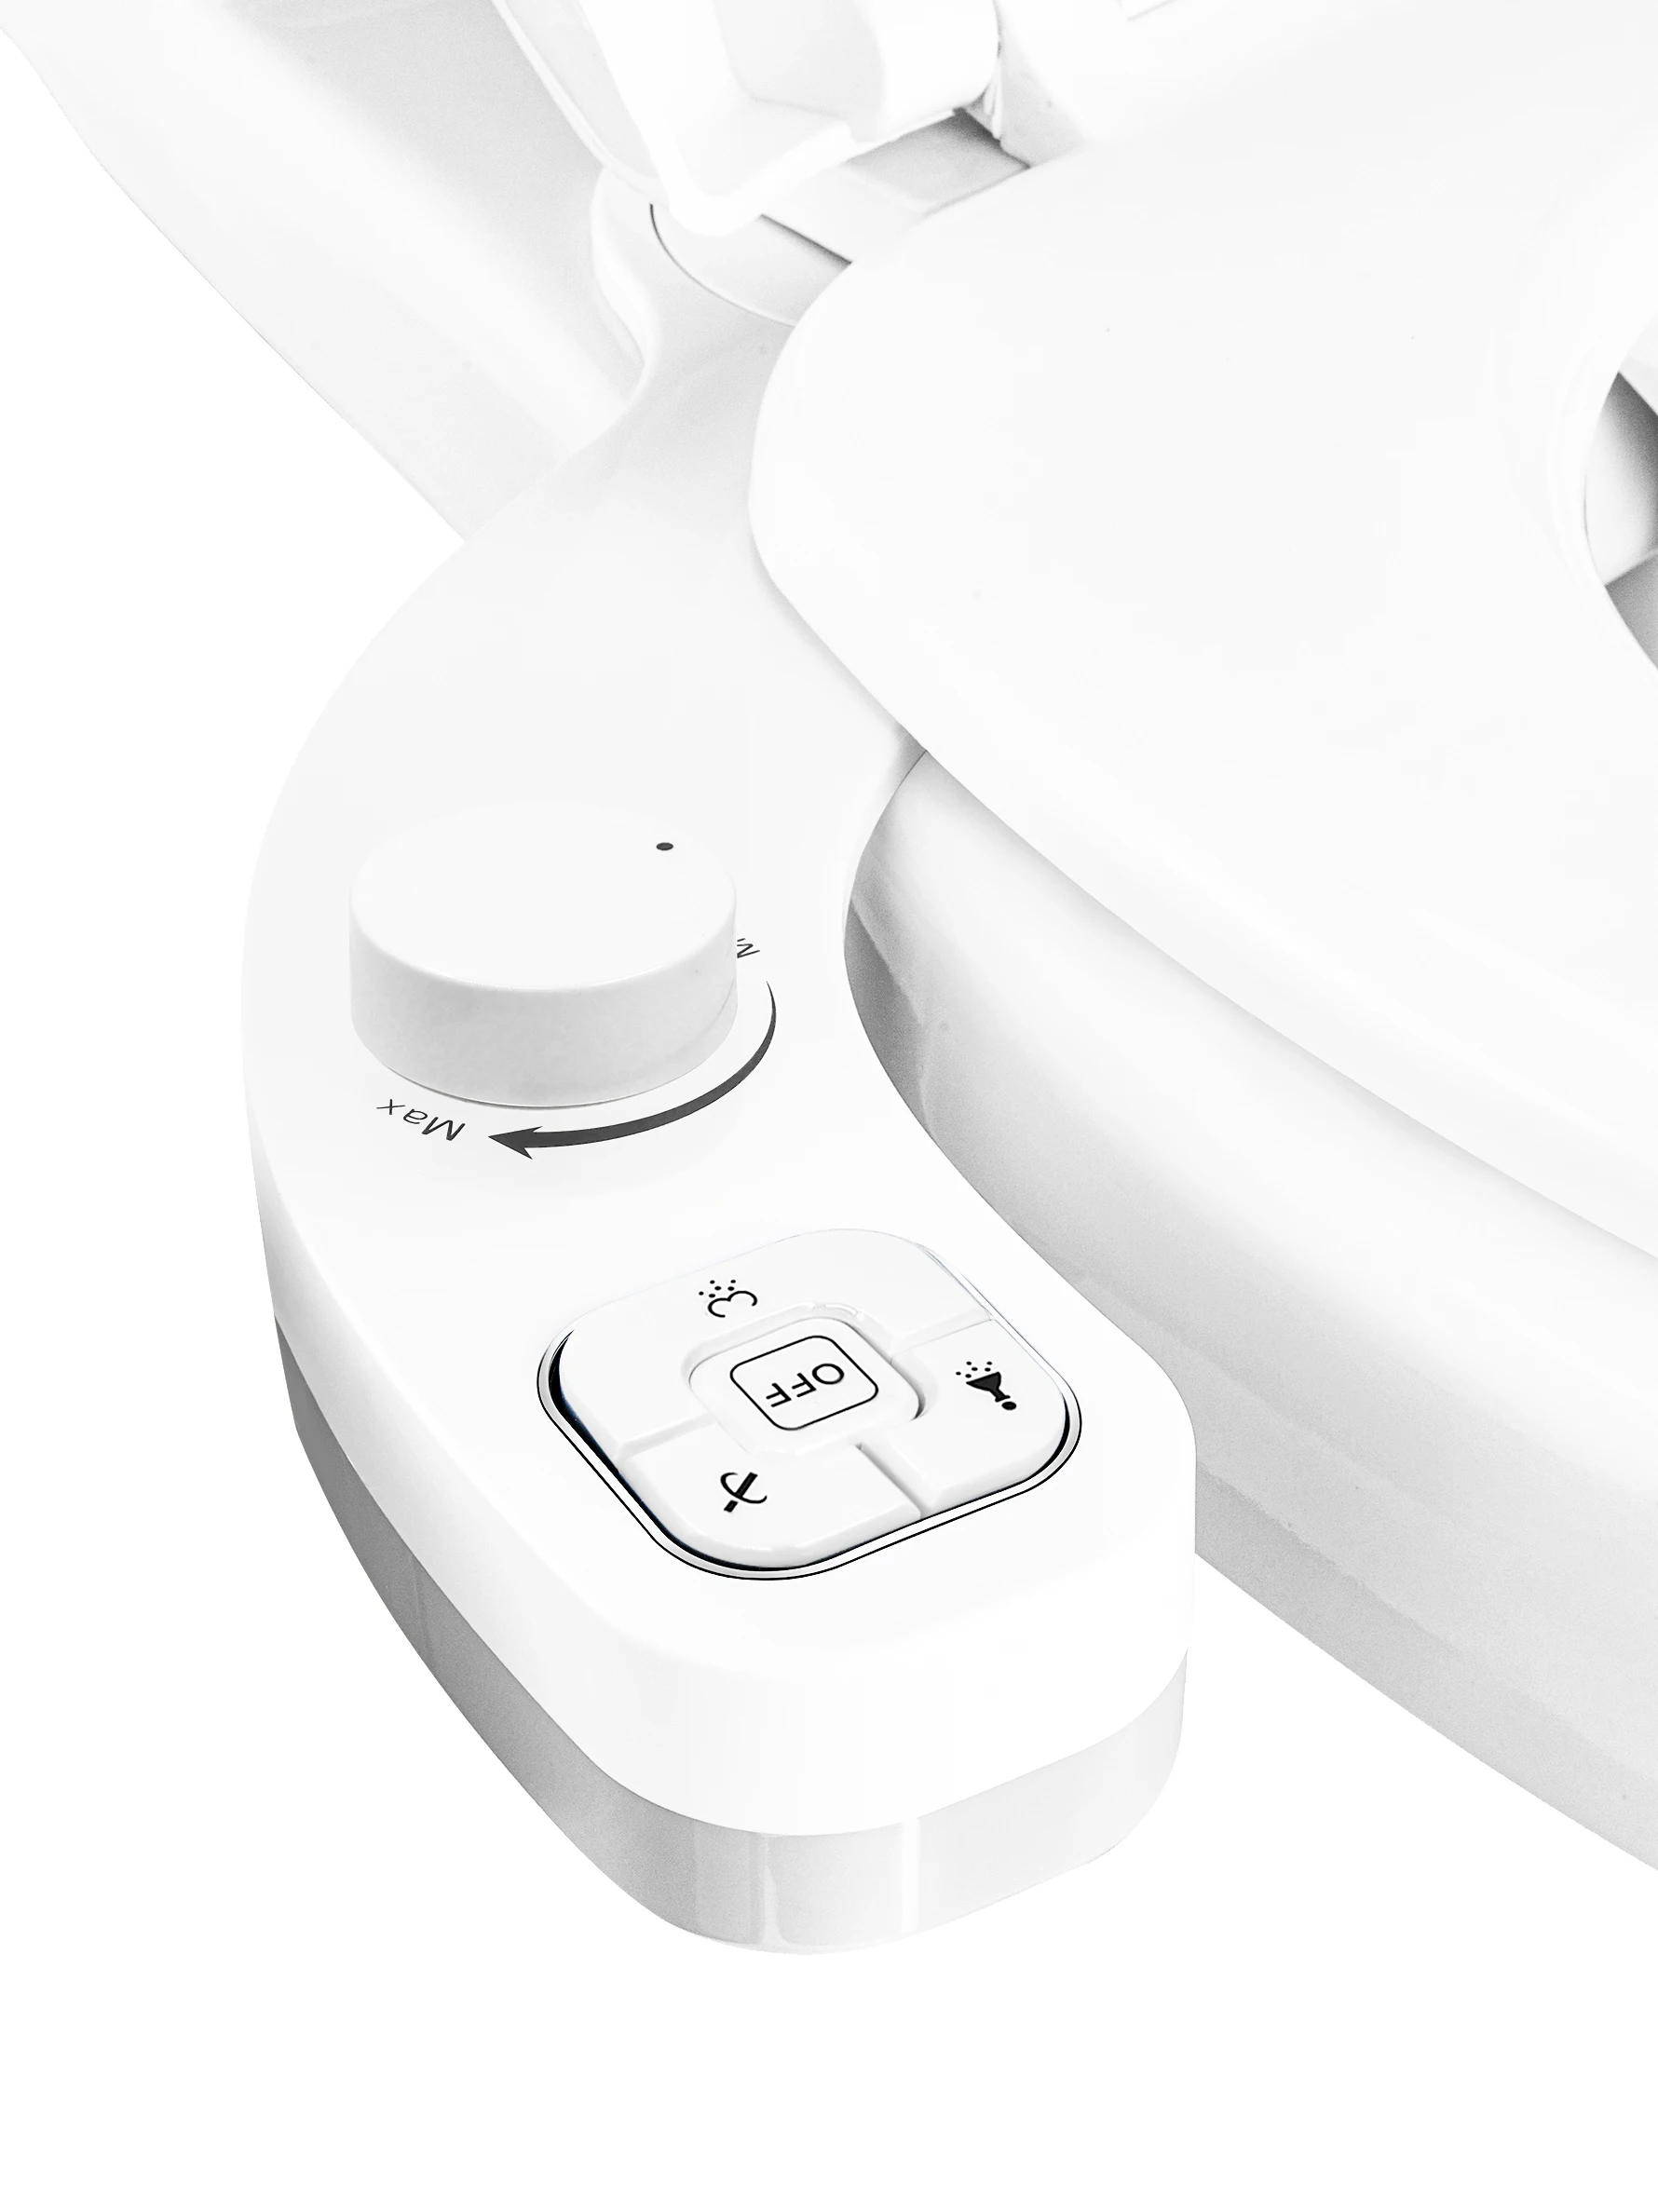 SAMODRA Bidet Attachment for Toilet - Warm Water, Hot & Cold, Non-Electric  Pressure Sprayer Nozzle Control for Posterior & Femin